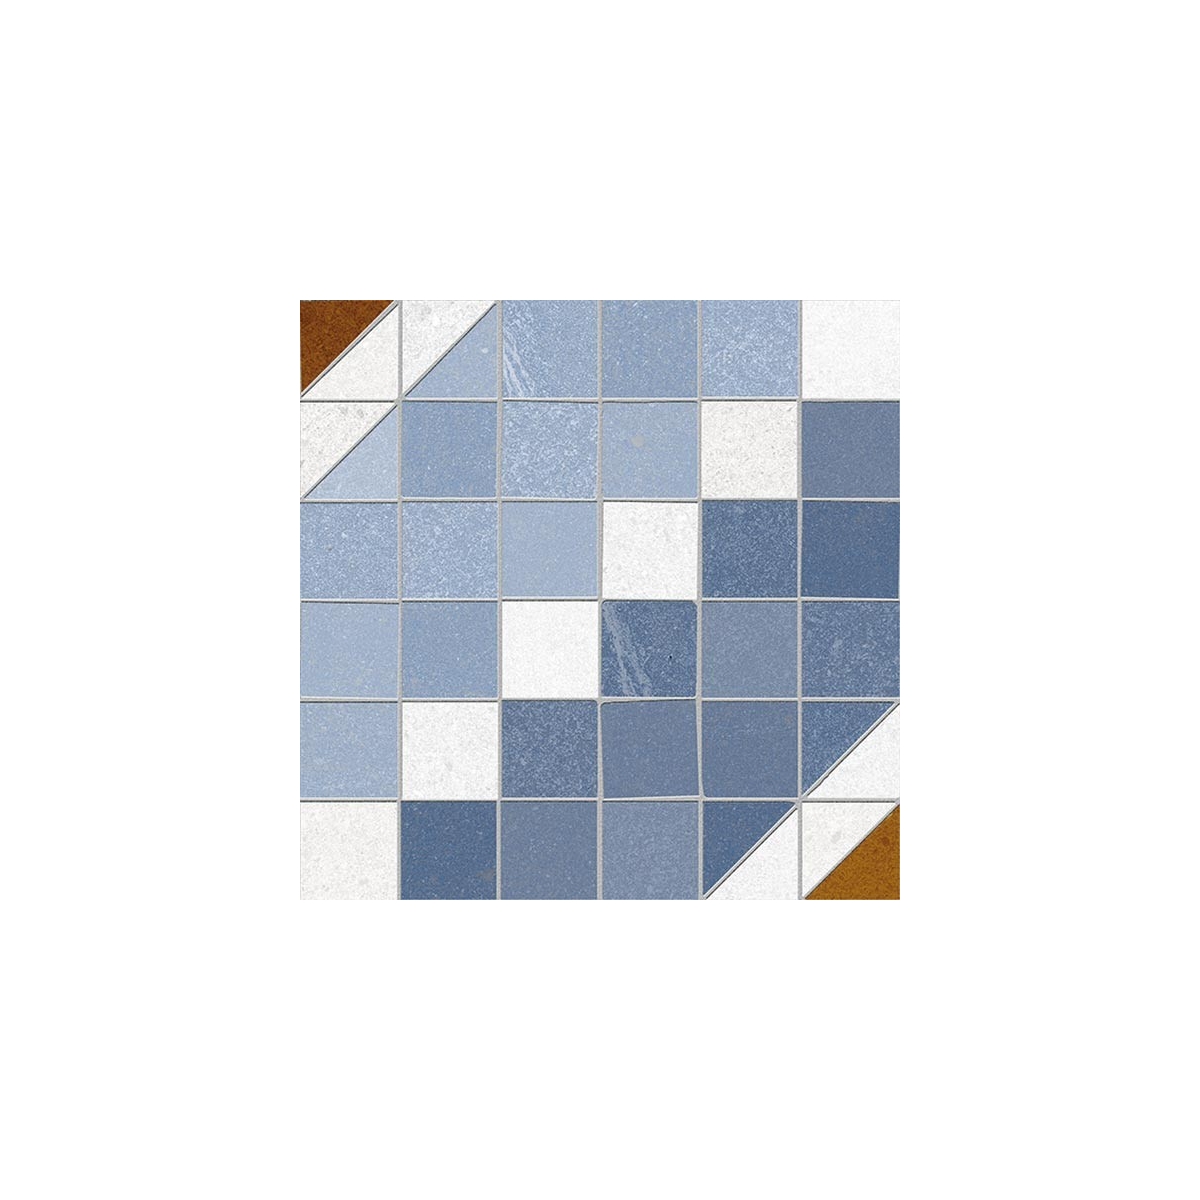 Marly Azul 20x20 (m2) - Pavimento hidráulico en gres porcelánico